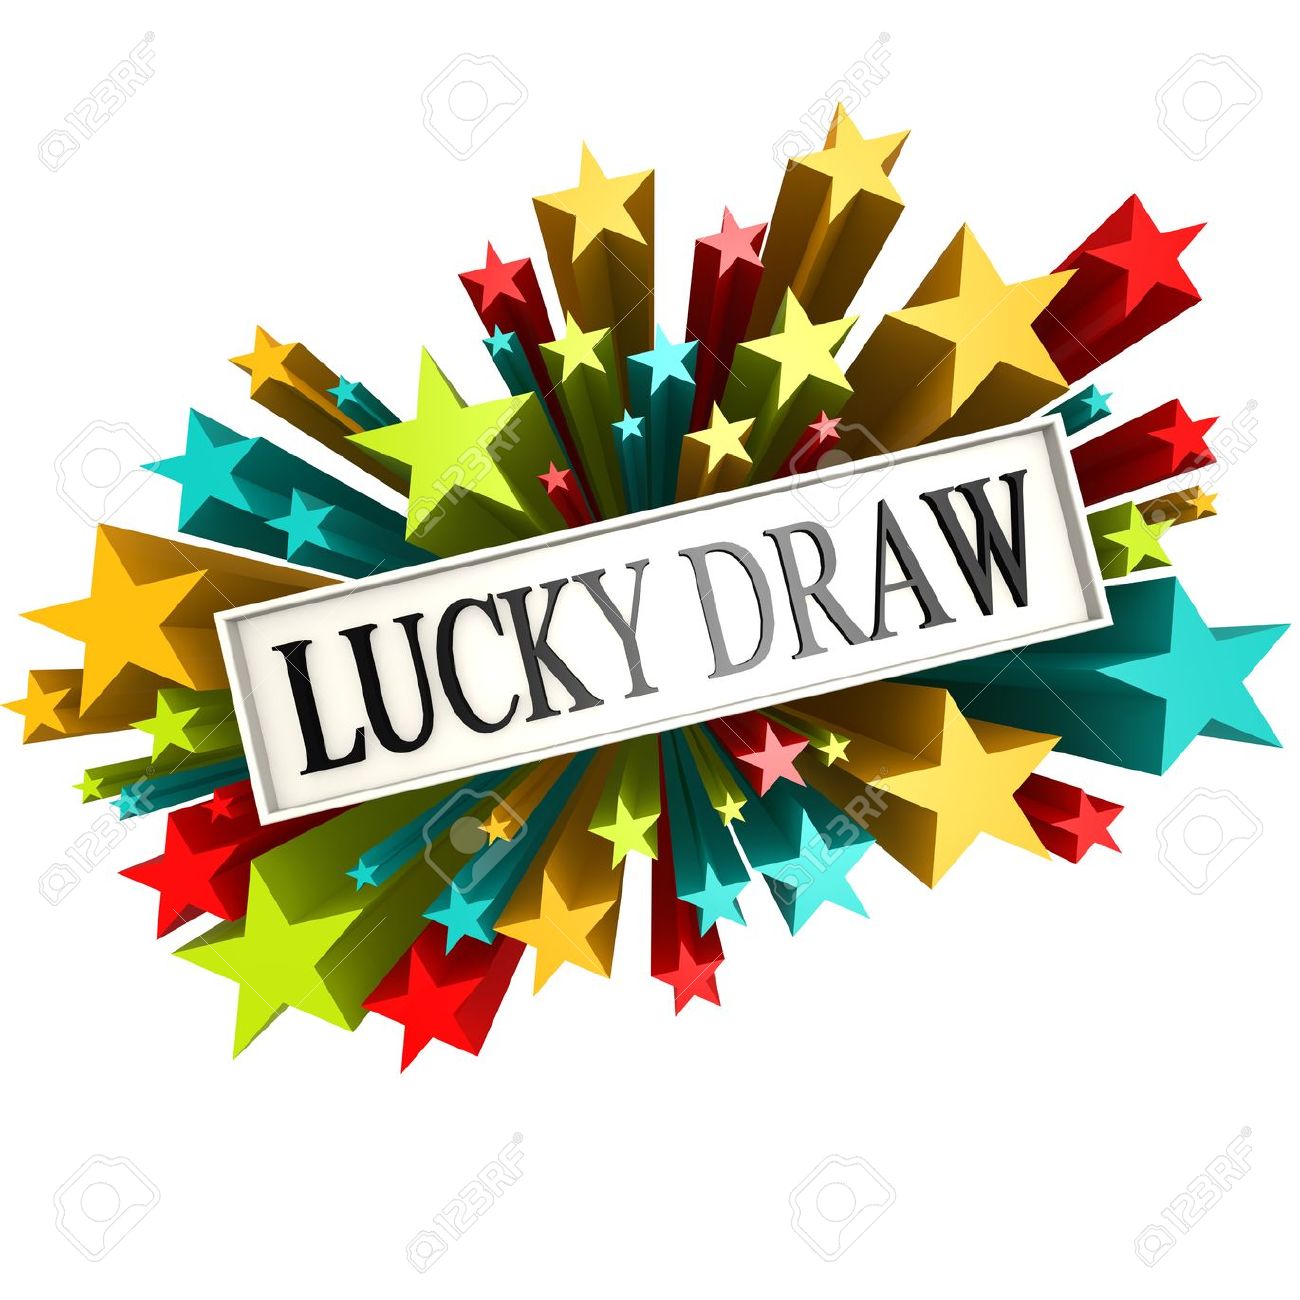 Buzzword Lucky draw Stock Pho